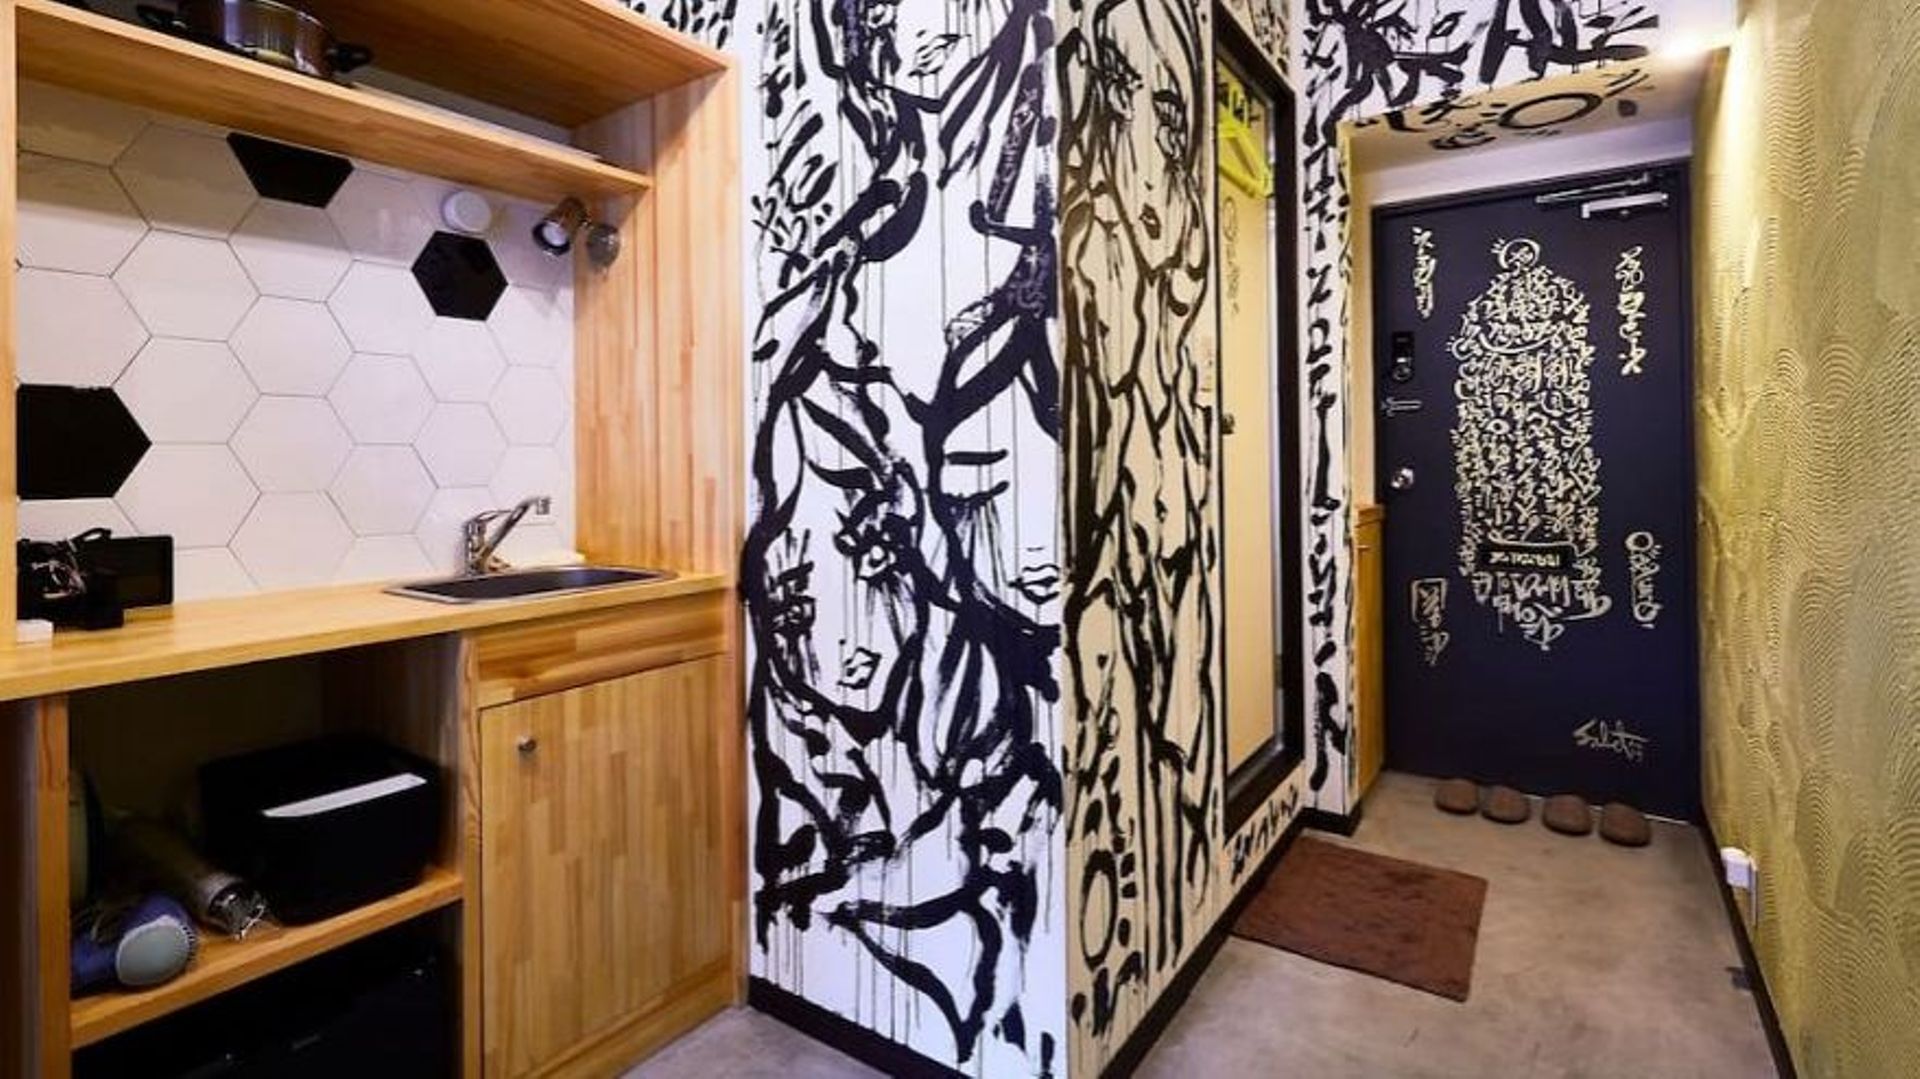 Un artiste prend les murs de son logement Airbnb pour des toiles